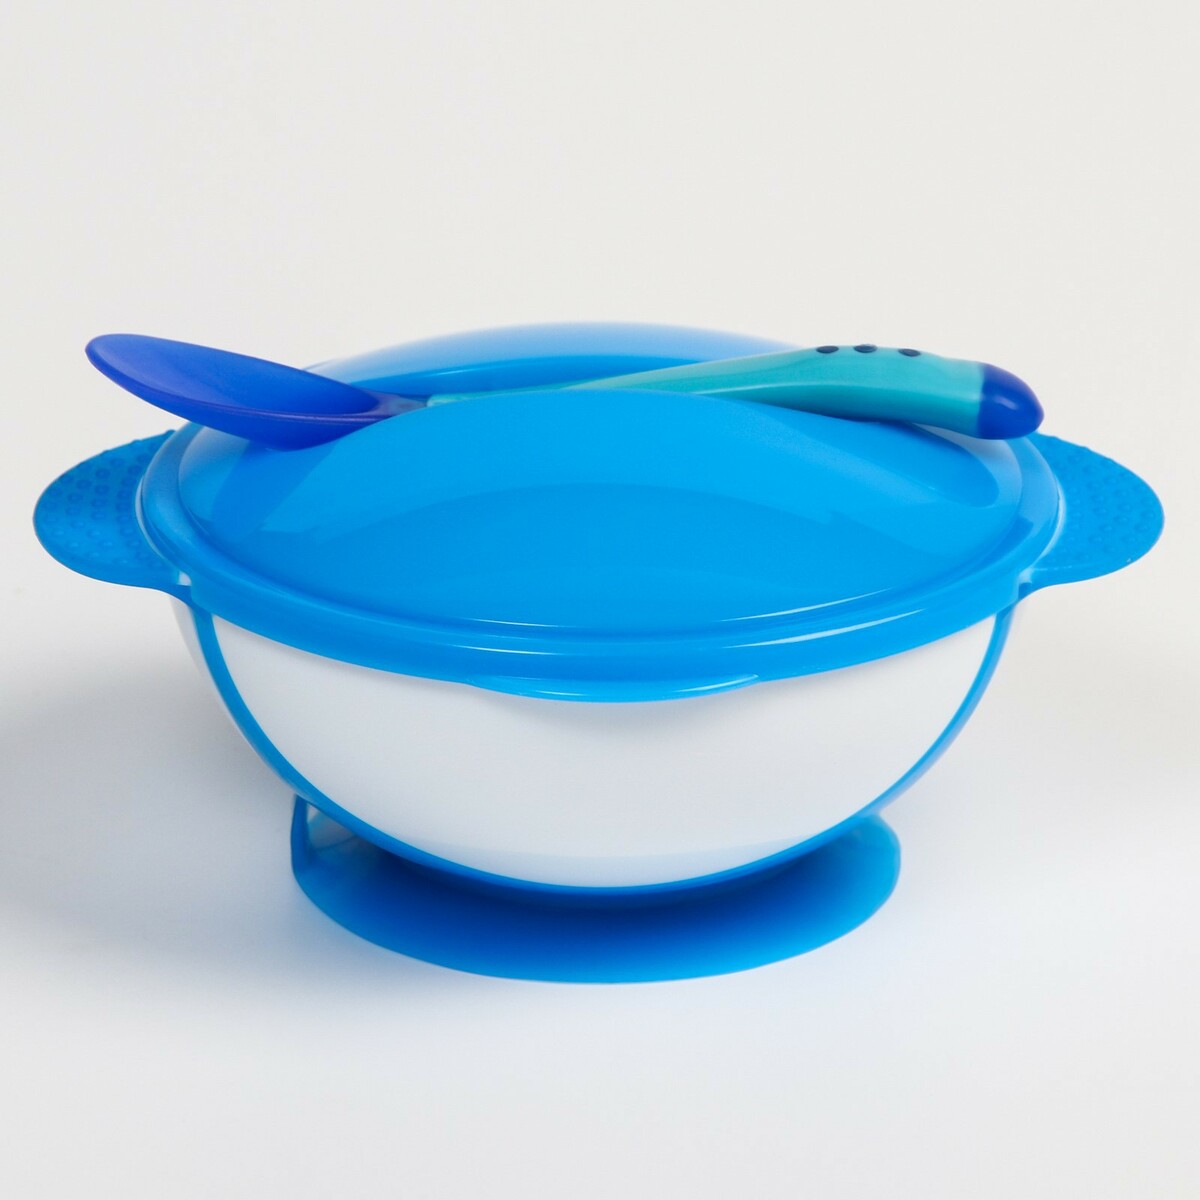 Набор для кормления: миска на присоске 340 мл., с крышкой, термоложка, цвет синий набор для кормления 3 предмета тарелка на присоске 350 мл крышка термоложка синий